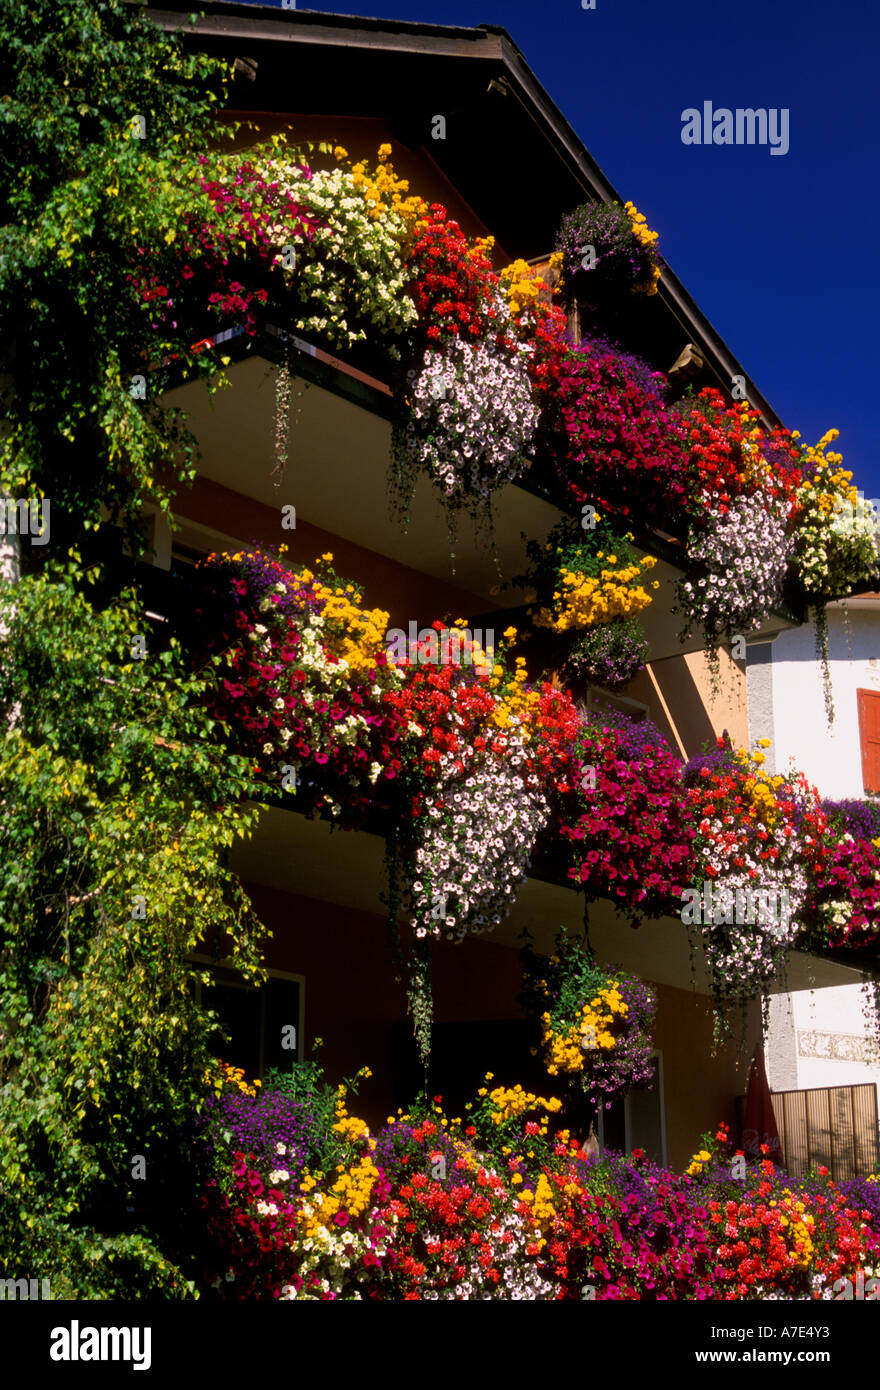 Blumenkasten, Blumenkästen, flowerbox, Blumenkästen, Blumen in voller  Blüte, Dorf Zernez, Zernez, Graubünden Kanton, in der Schweiz, Europa  Stockfotografie - Alamy